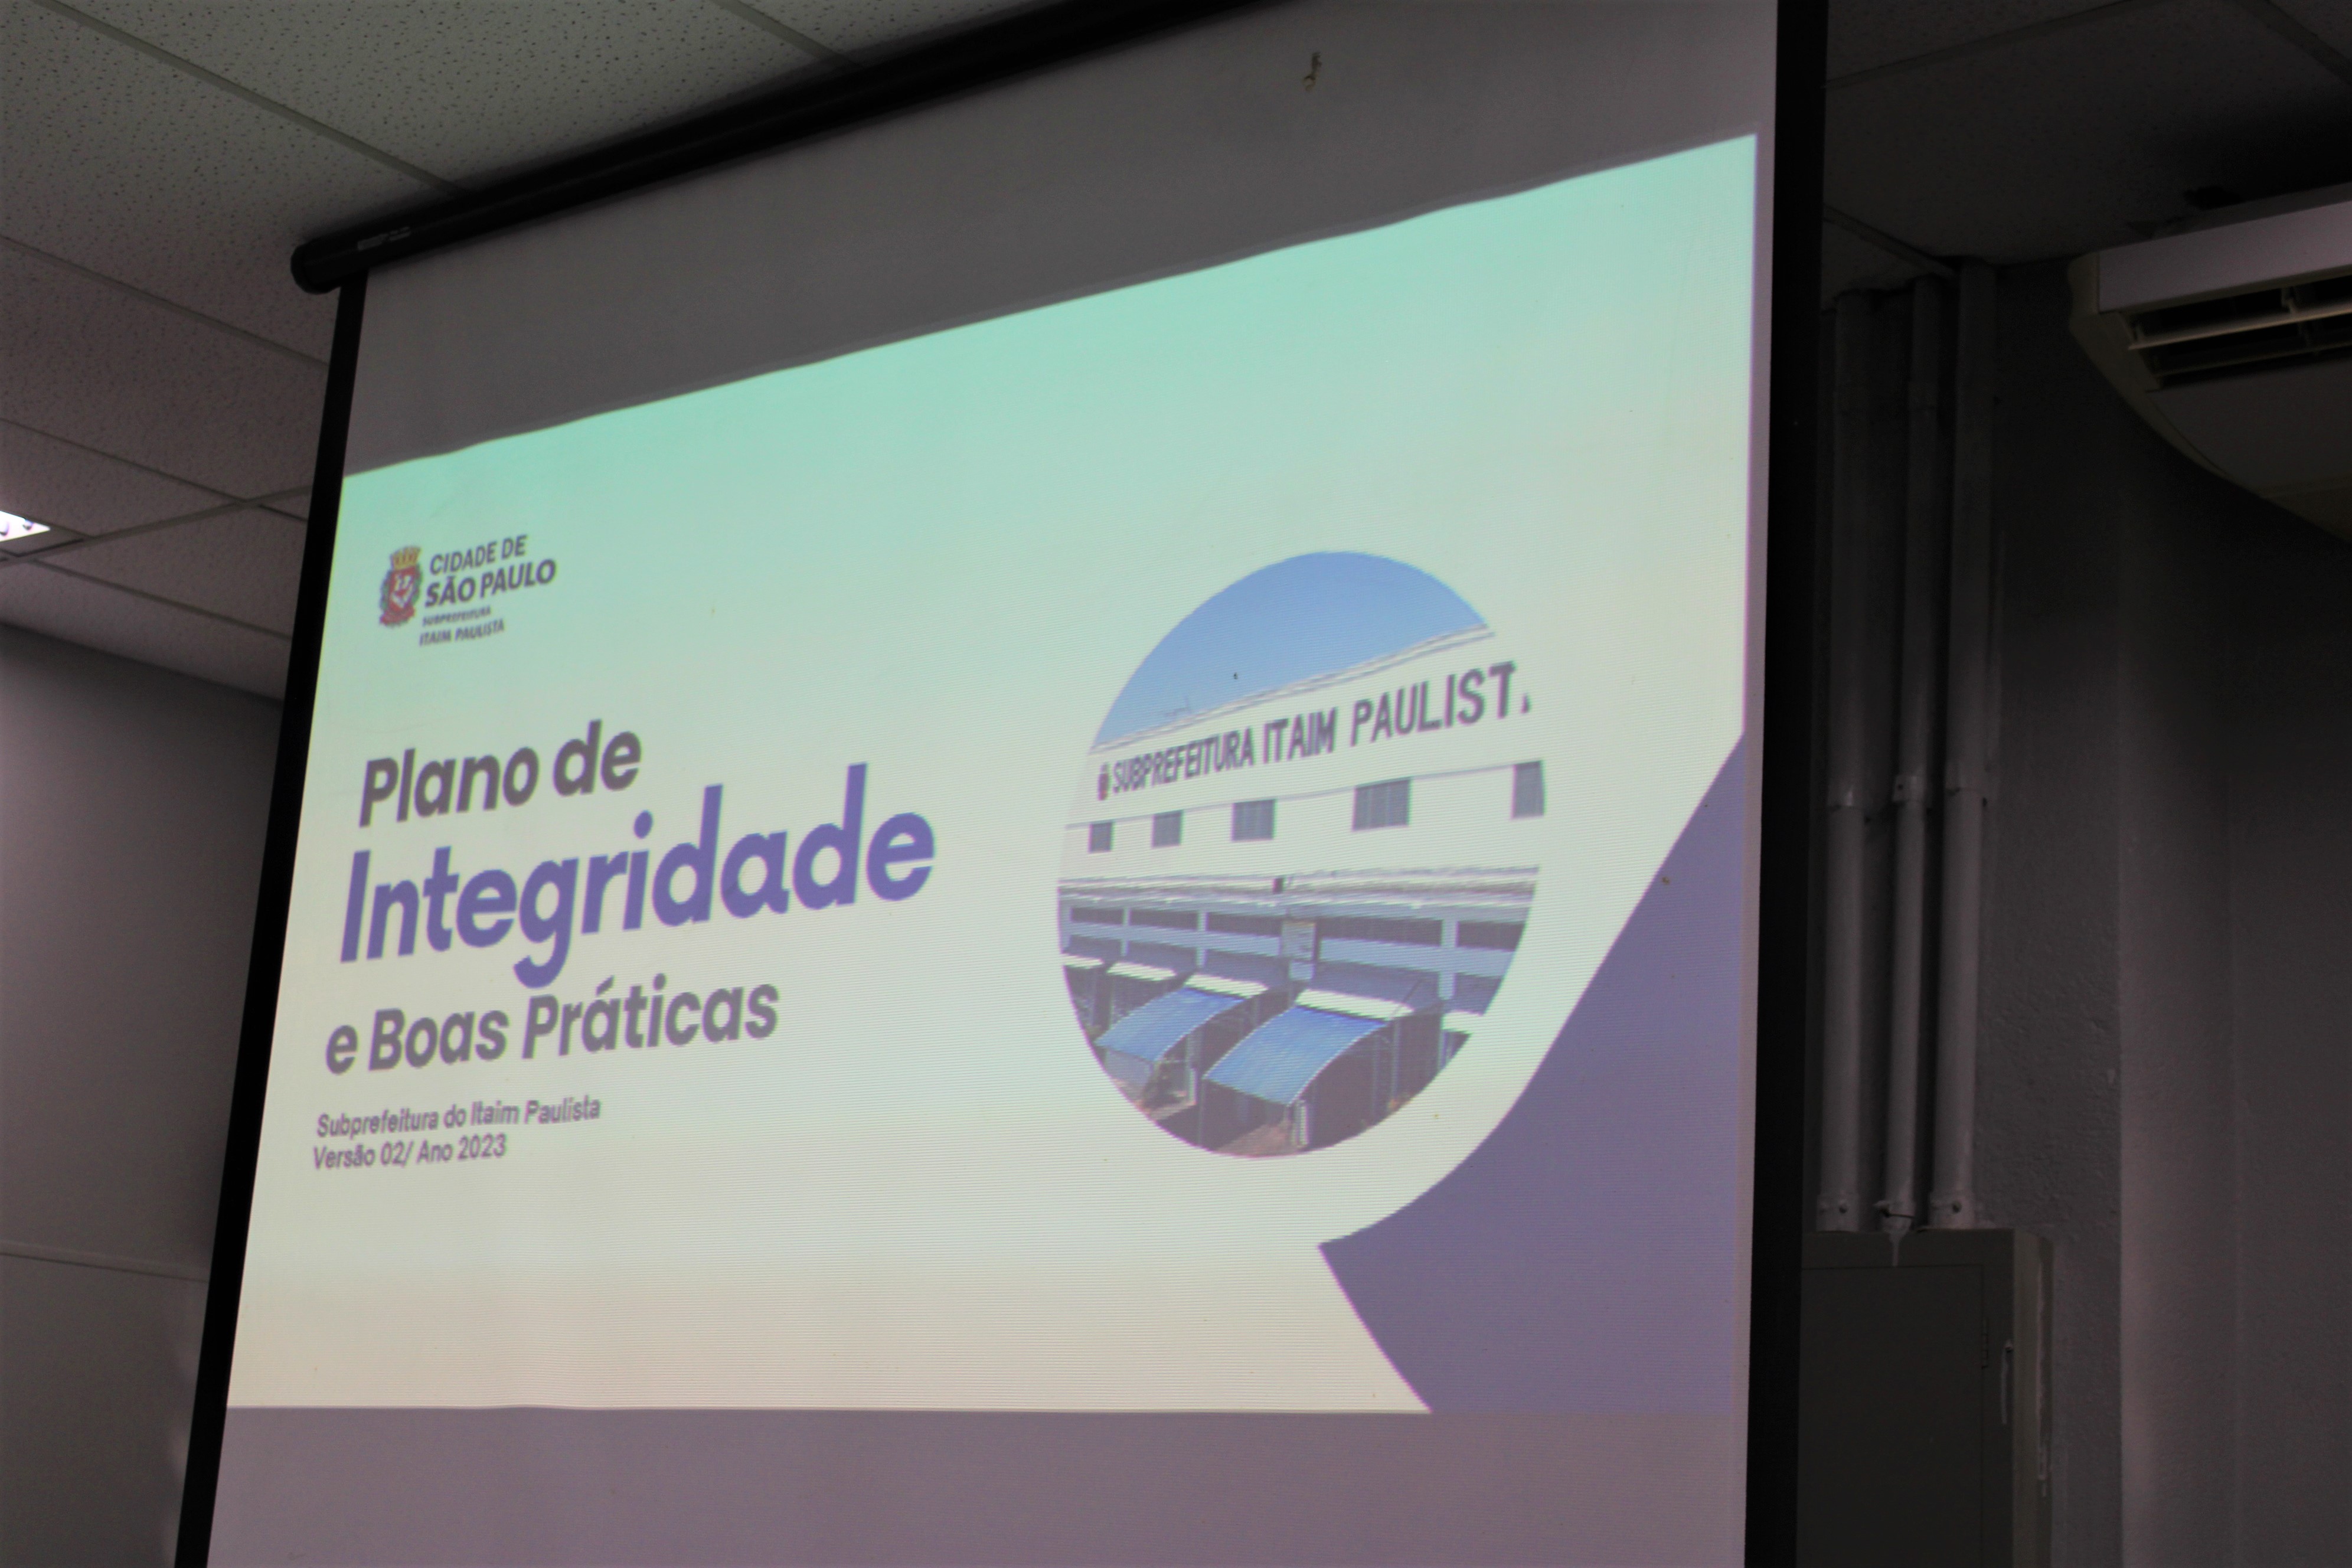 Uma foto de um telão com o primeiro slide da apresentação do Plano de Integridade e Boas Práticas. Na imagem, há os dizeres: Plano de Integridade e Boas Práticas, subprefeitura do Itaim Paulista, versão 02/Ano 2023.